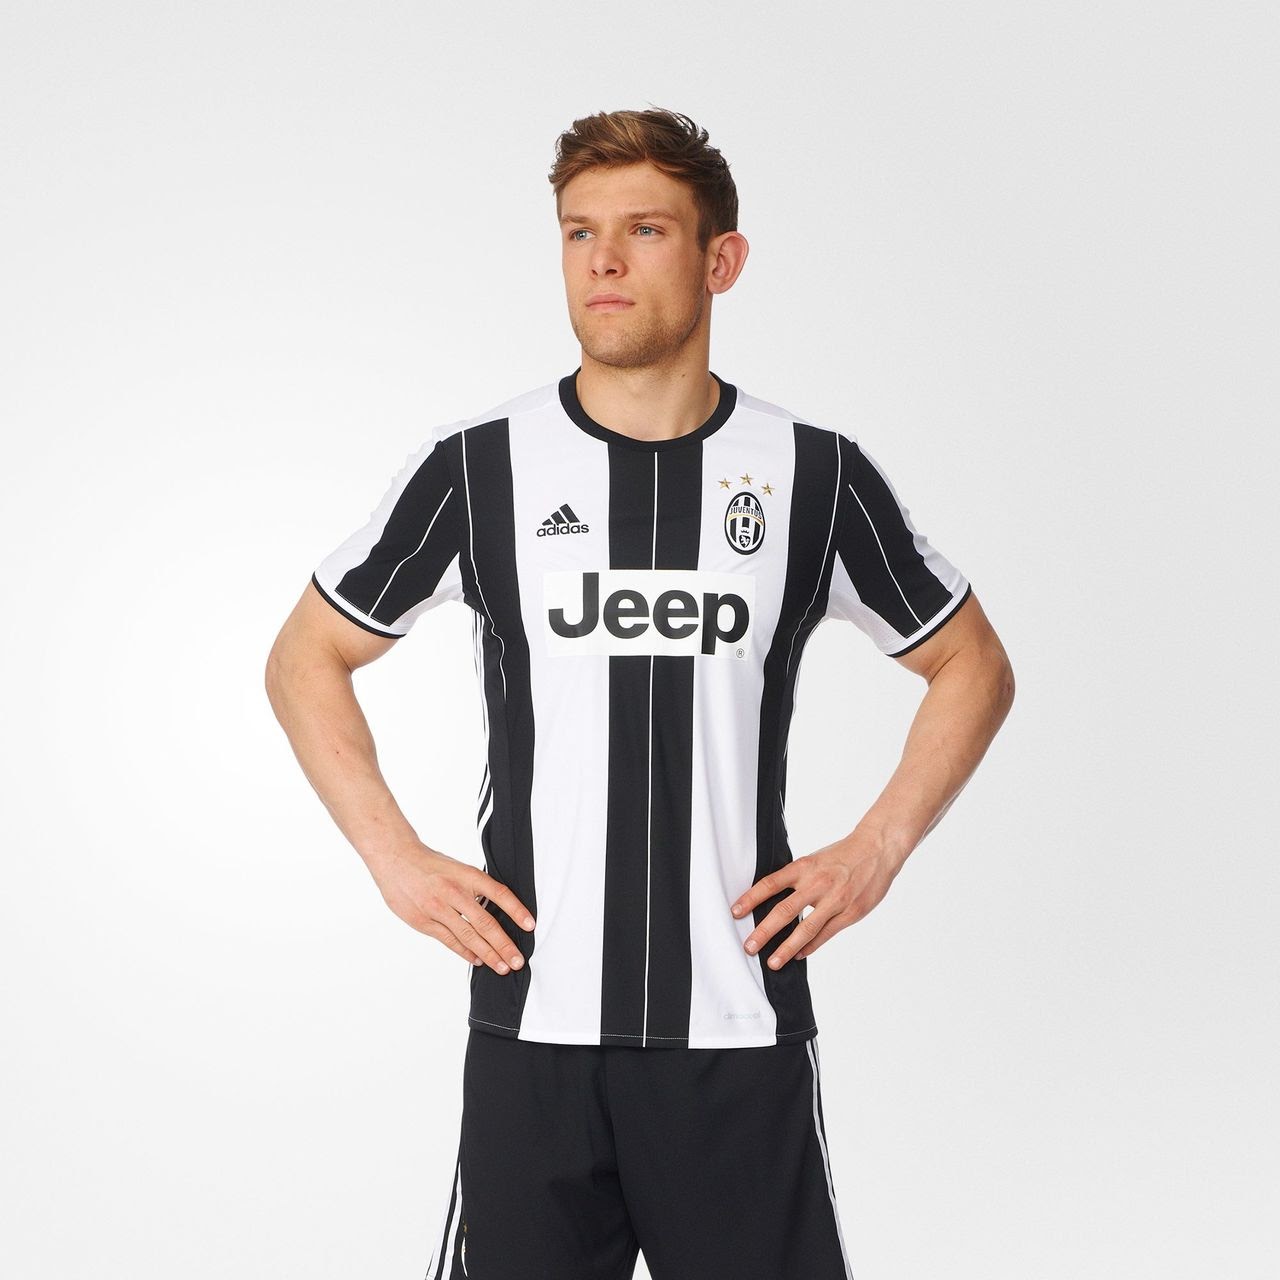 Tuyển tập áo đấu của CLB Juventus trong các mùa giải gần đây 4